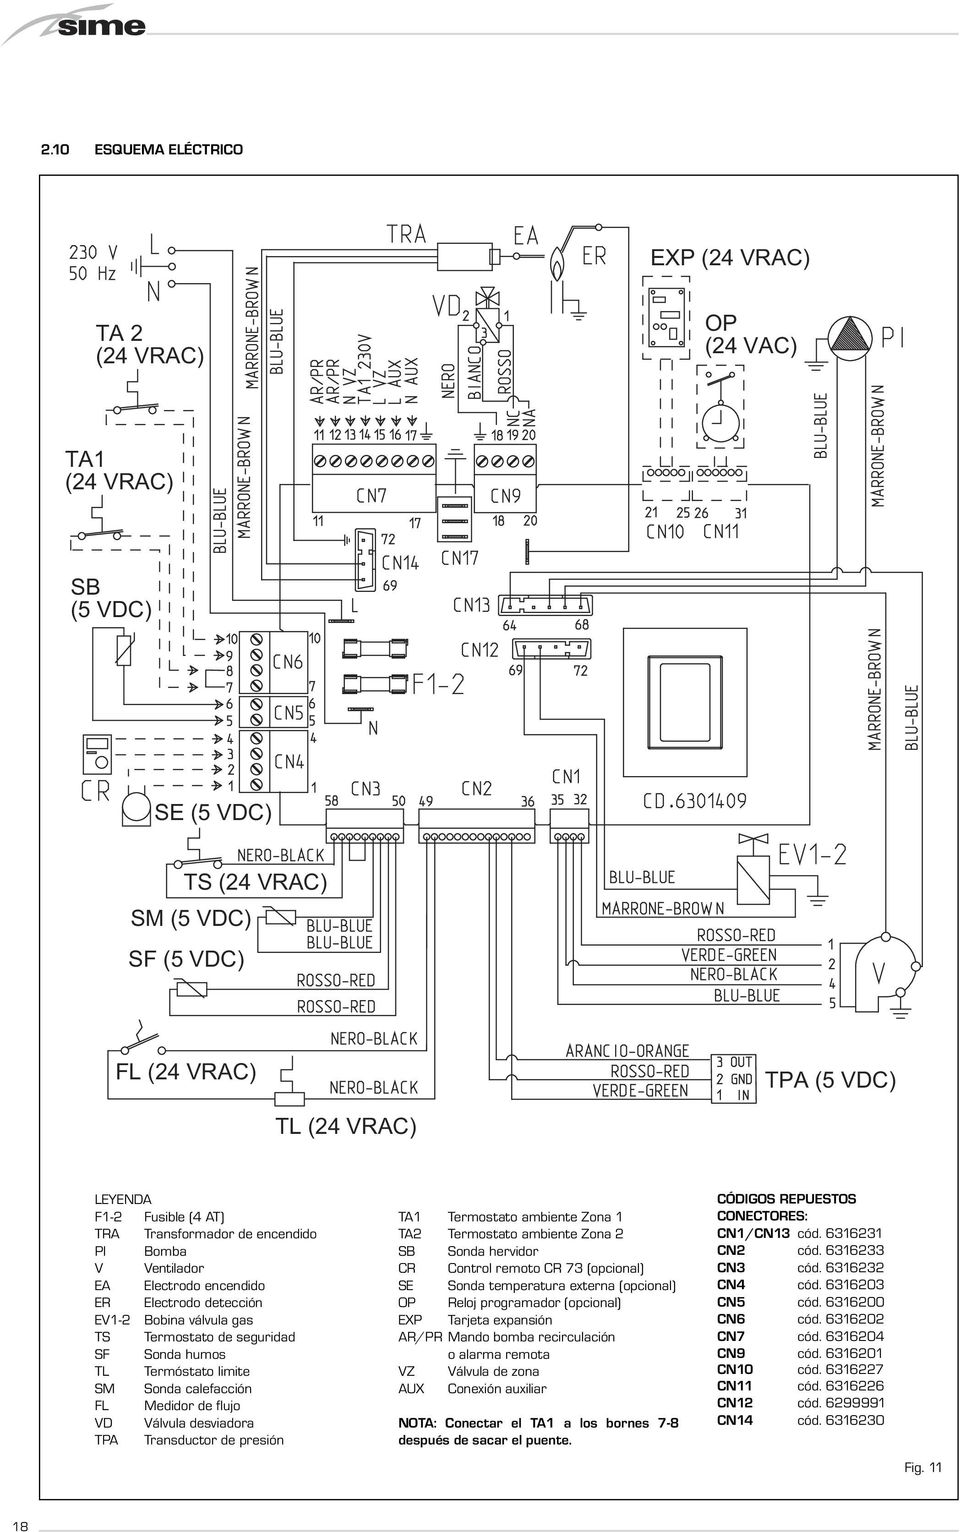 calefacción FL Medidor de flujo VD Válvula desviadora TPA Transductor de presión TA1 Termostato ambiente Zona 1 TA Termostato ambiente Zona SB Sonda hervidor CR Control remoto CR 73 (opcional) Sonda